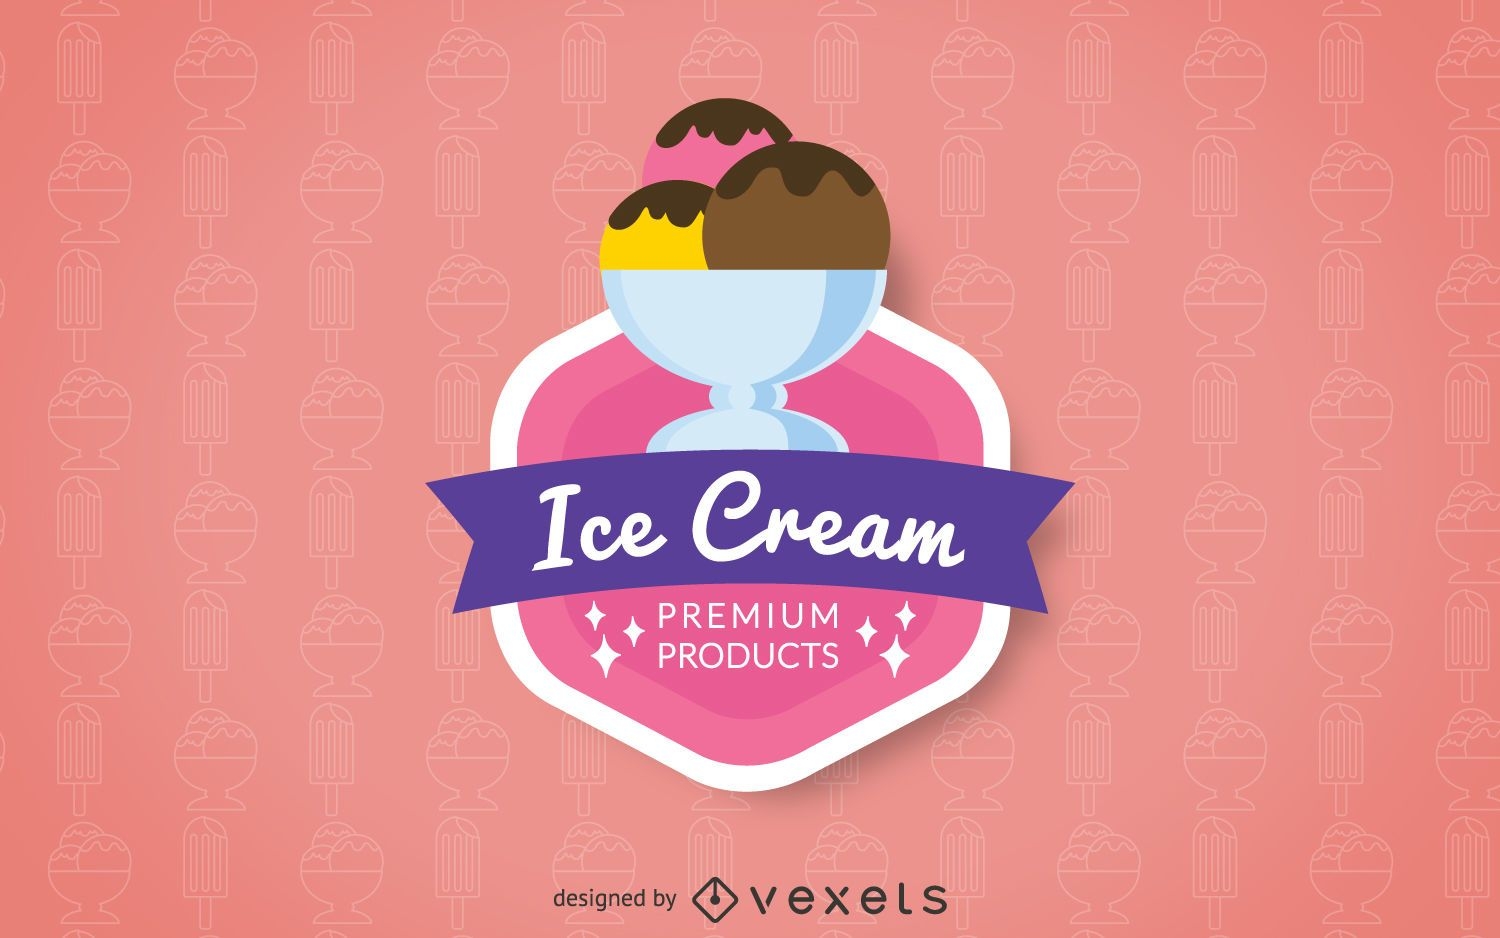 Insignia del logo de helado